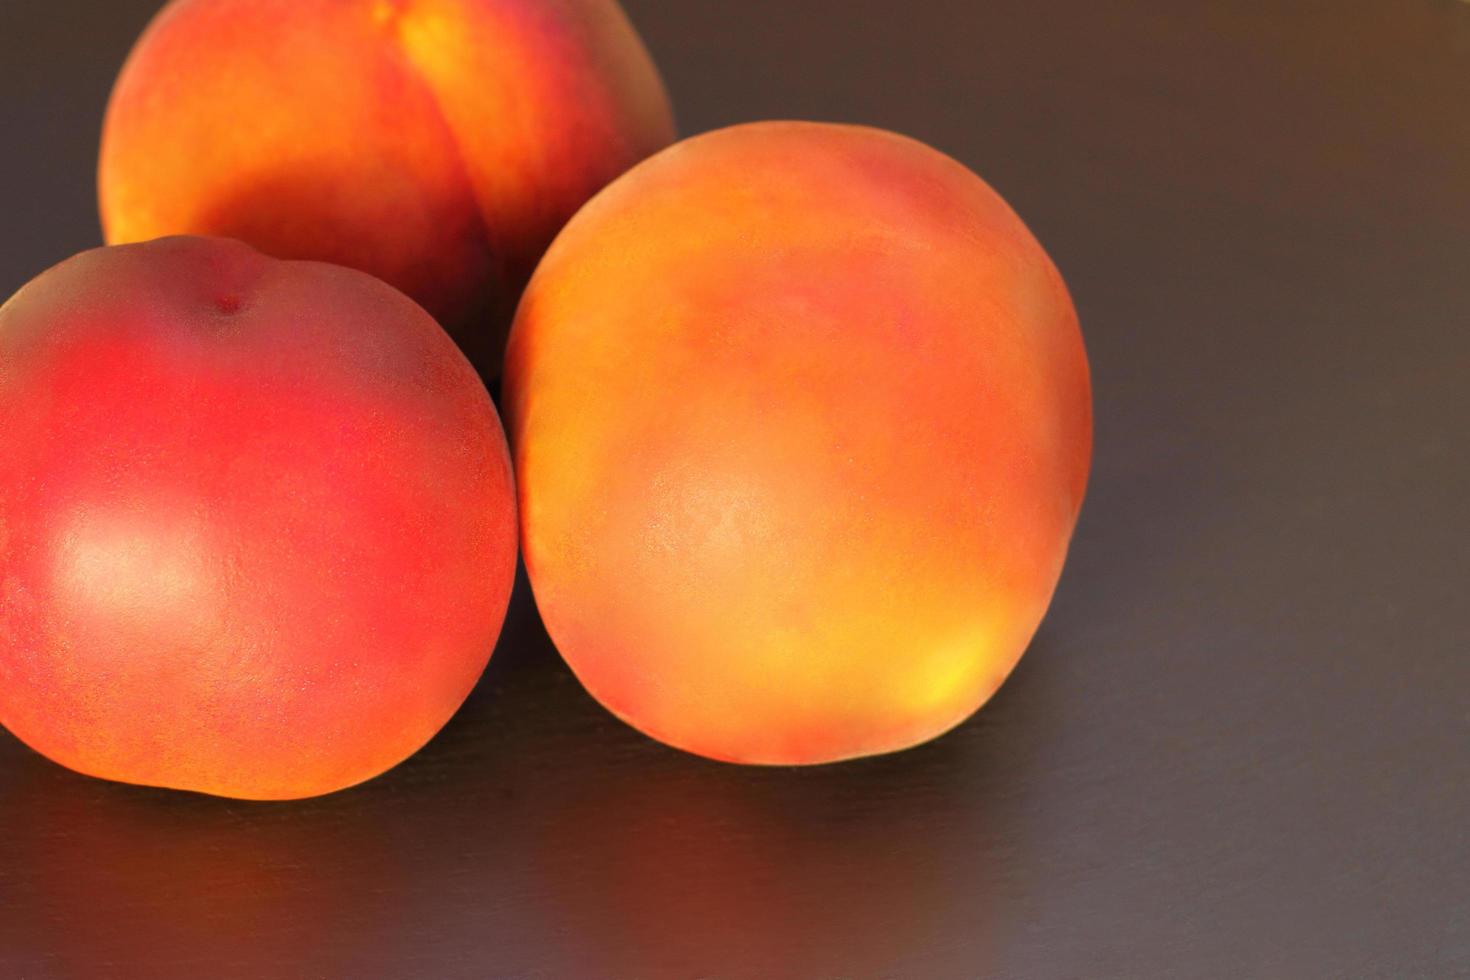 pêssego maduro, close-up de três pêssegos prunus persica em fundo preto foto